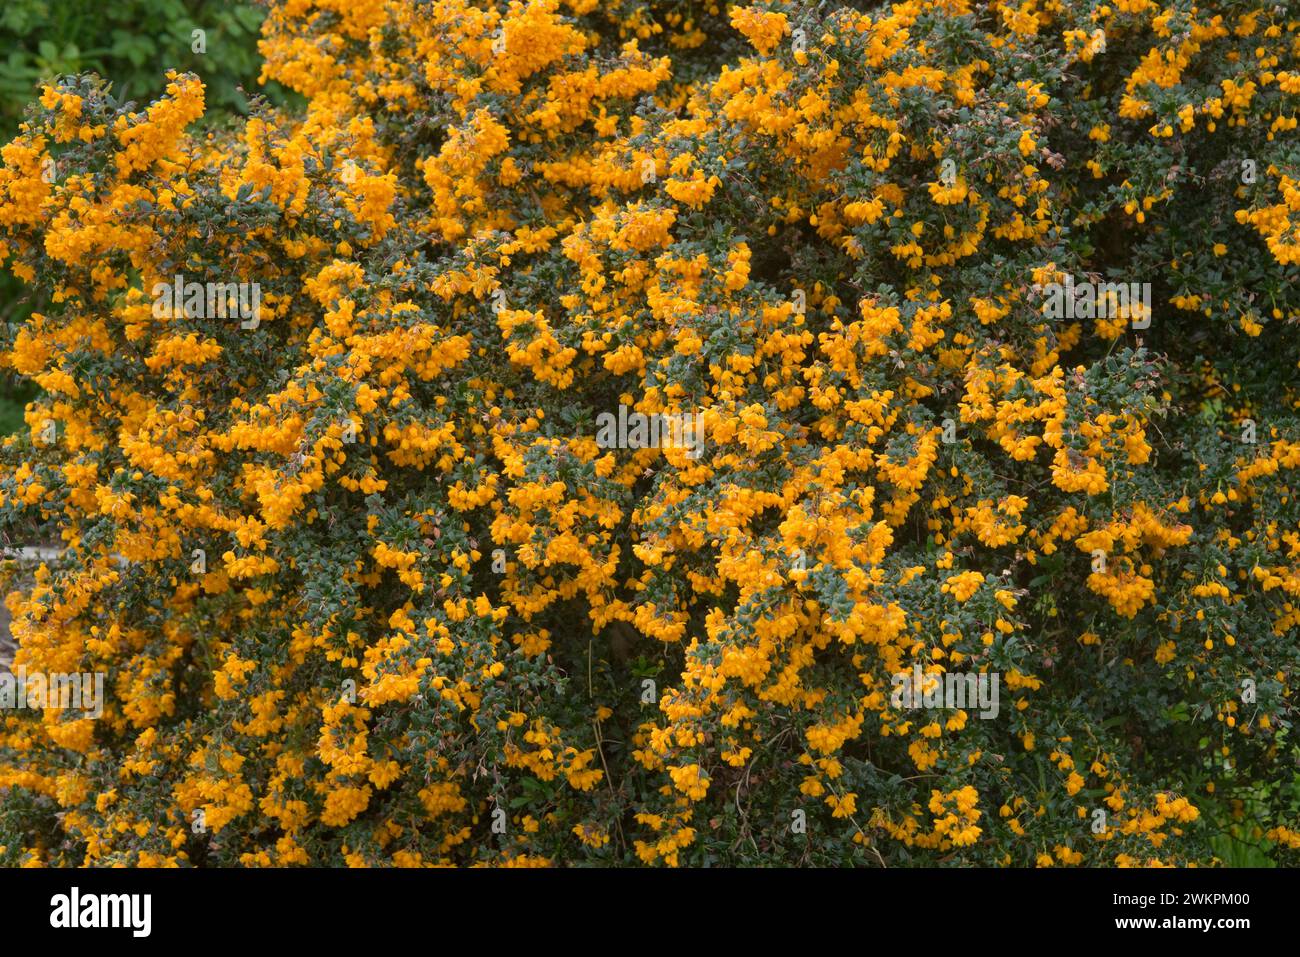 L'épine-épine de Darwin (Berberis darwinii) recouverte de grappes de petites fleurs oranges sur de petites feuilles épineuses ovales vert foncé à feuilles persistantes, Berkshire, mai Banque D'Images